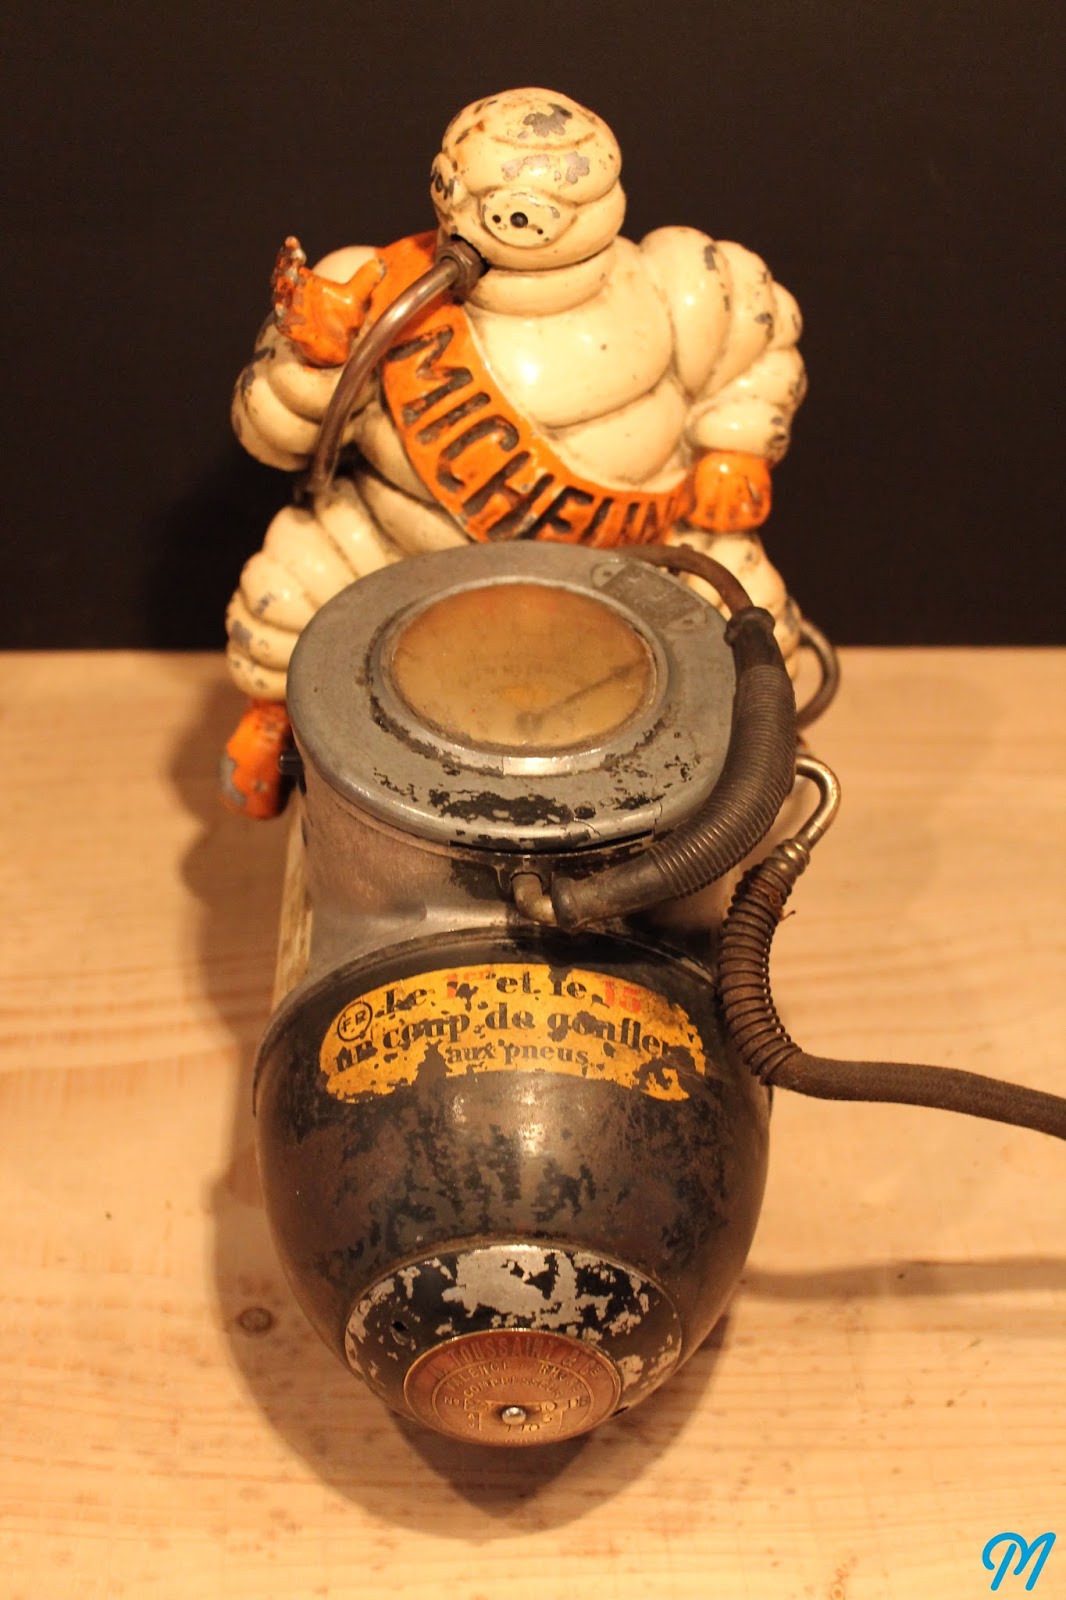 Marinette Vintage Blog: Compresseur Gonfleur Michelin 1930